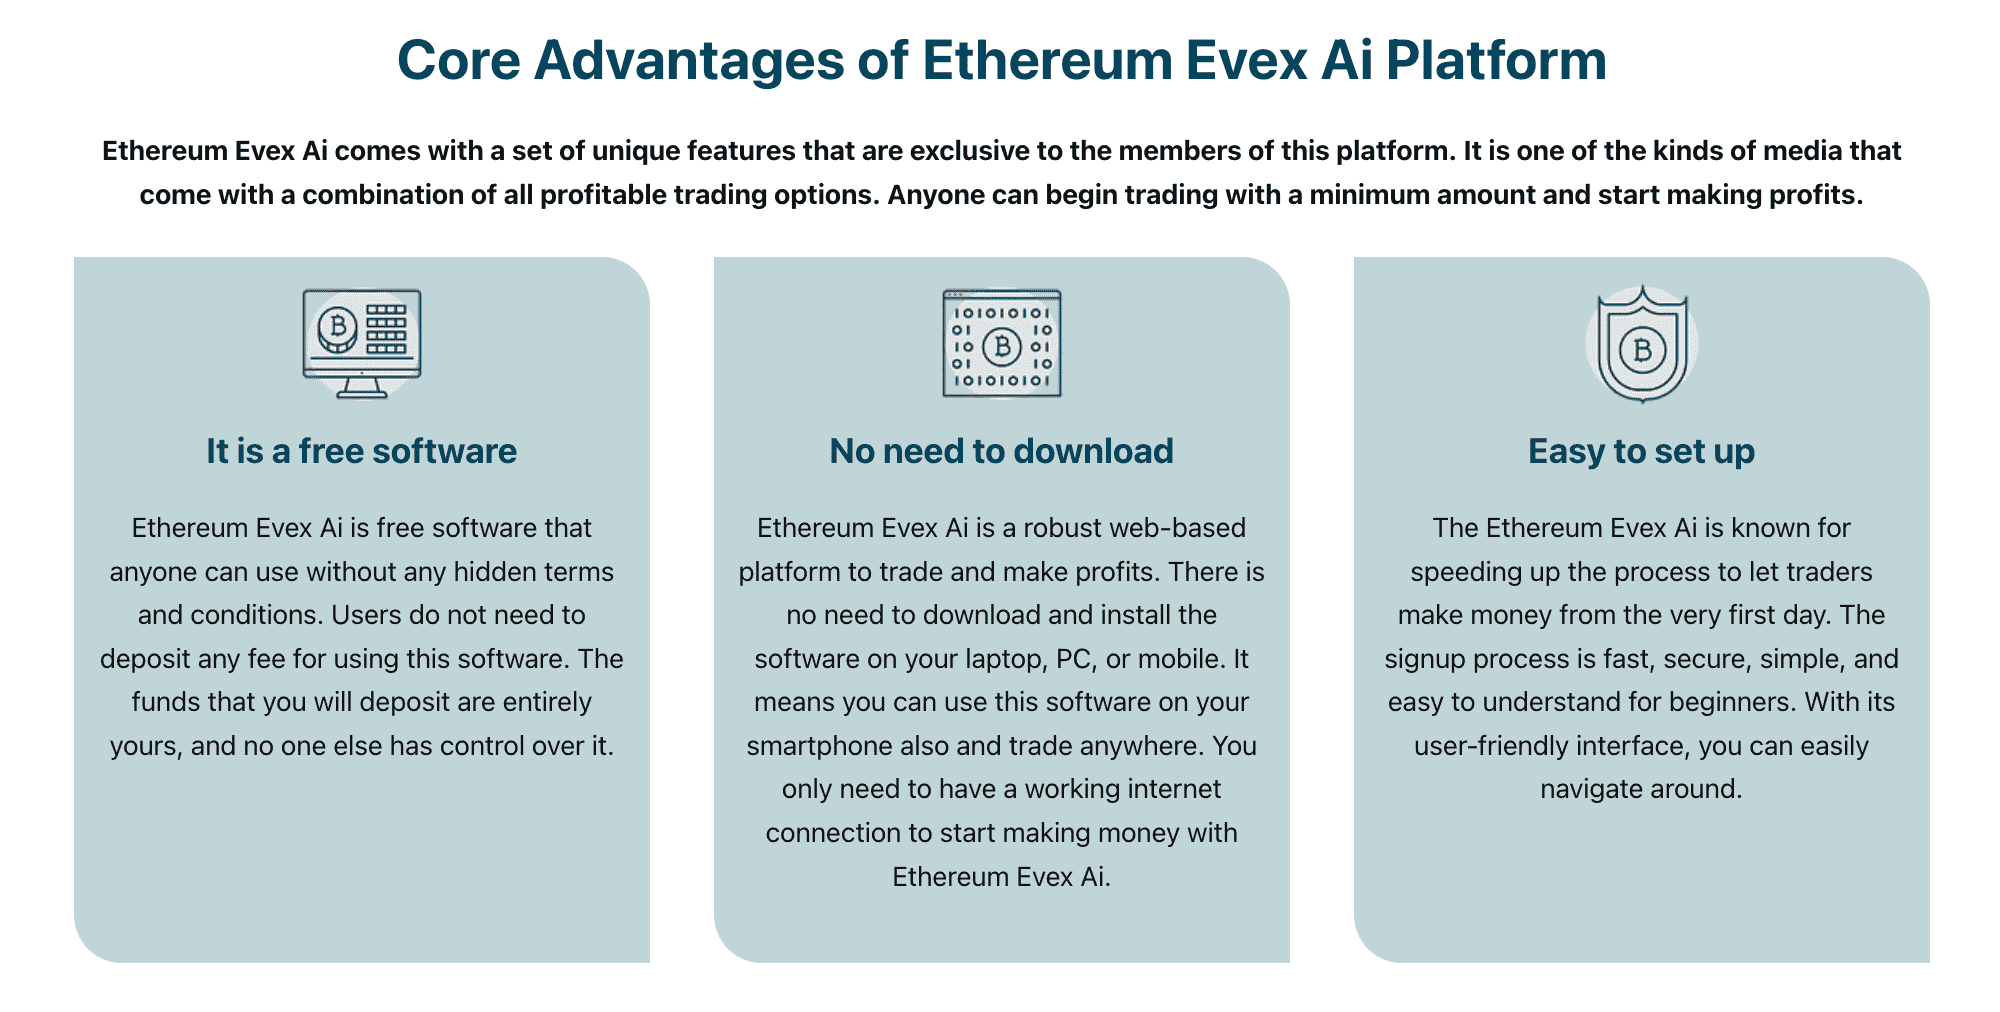 Ethereum Evex Ai 플랫폼의 핵심 장점  